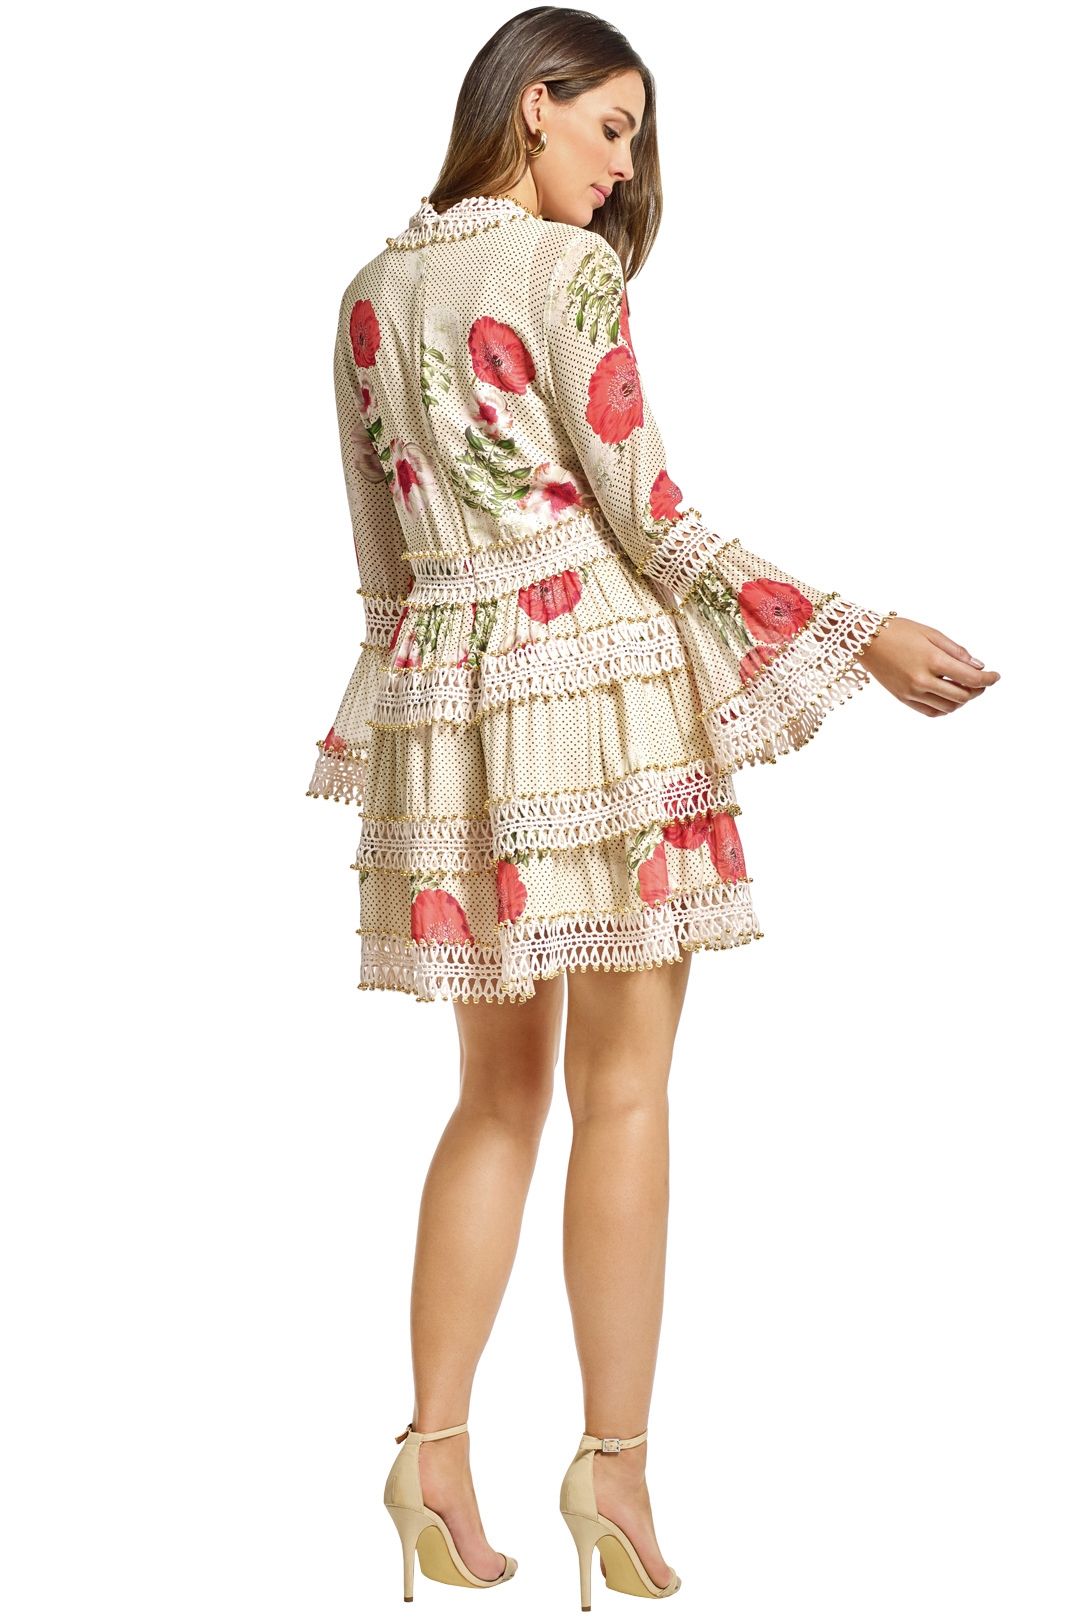 Thurley - Daisy Chain Mini Dress - Cream - Back